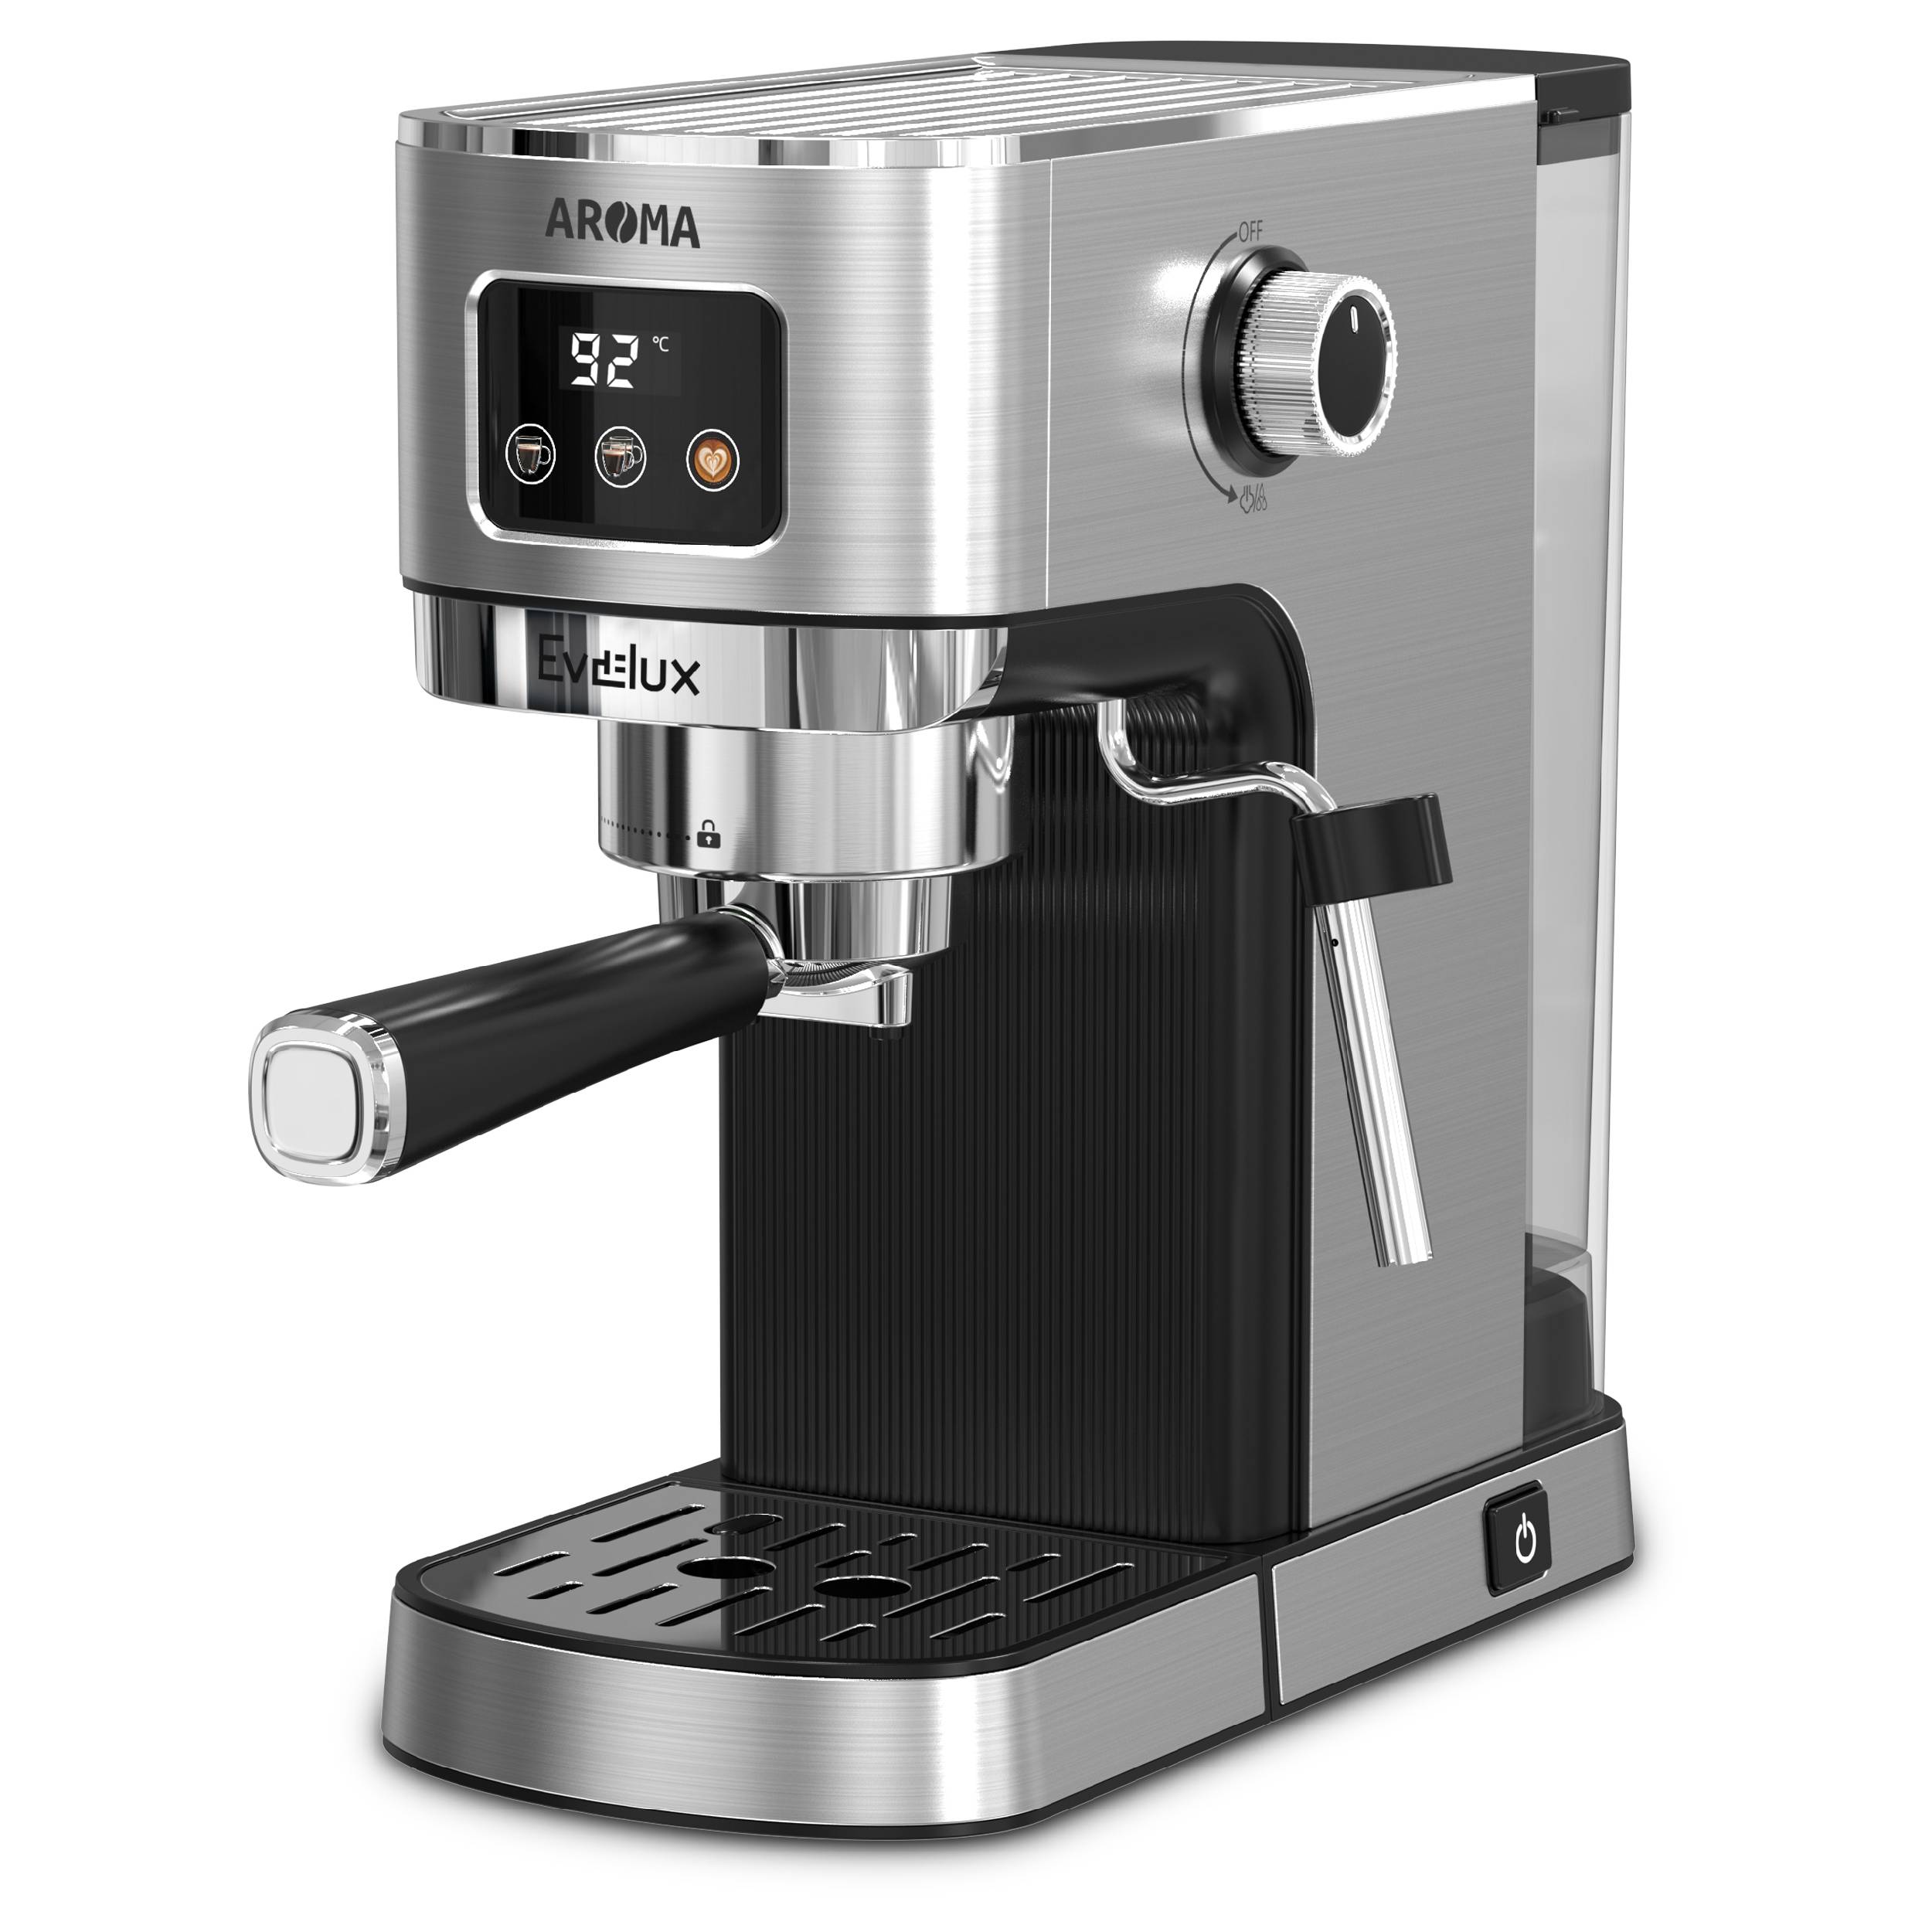 Рожковая кофеварка Evelux ECM 1009 Aroma серебристый, серый кофеварка smeg dcf02greu серый